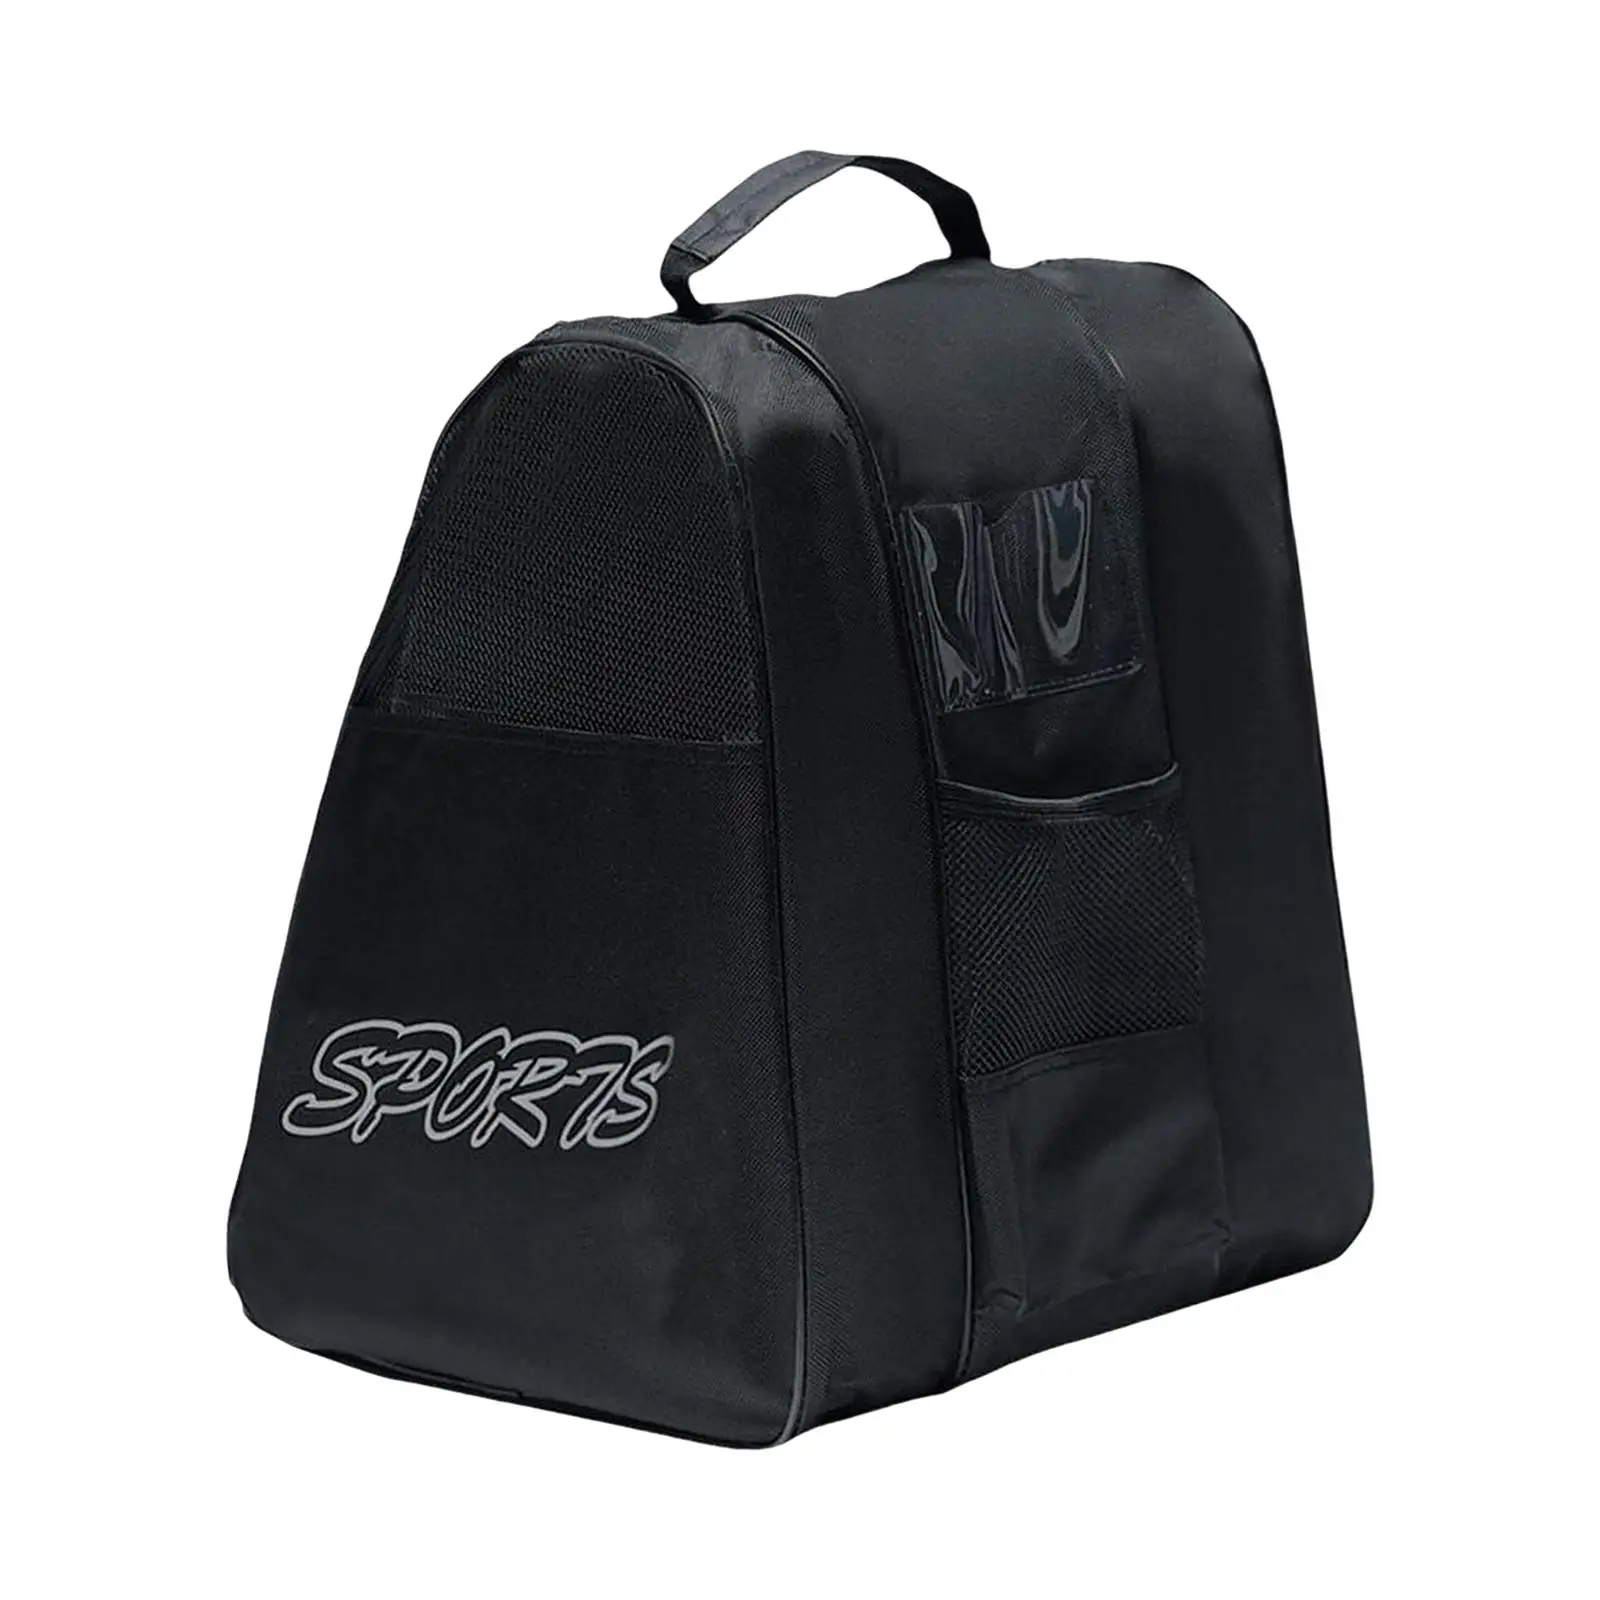 Roller Skating Bag Skate Accessories Portable Adjustable Shoulder Strap Breathable Women Men Skating Shoes Bag Ice Skate Bag